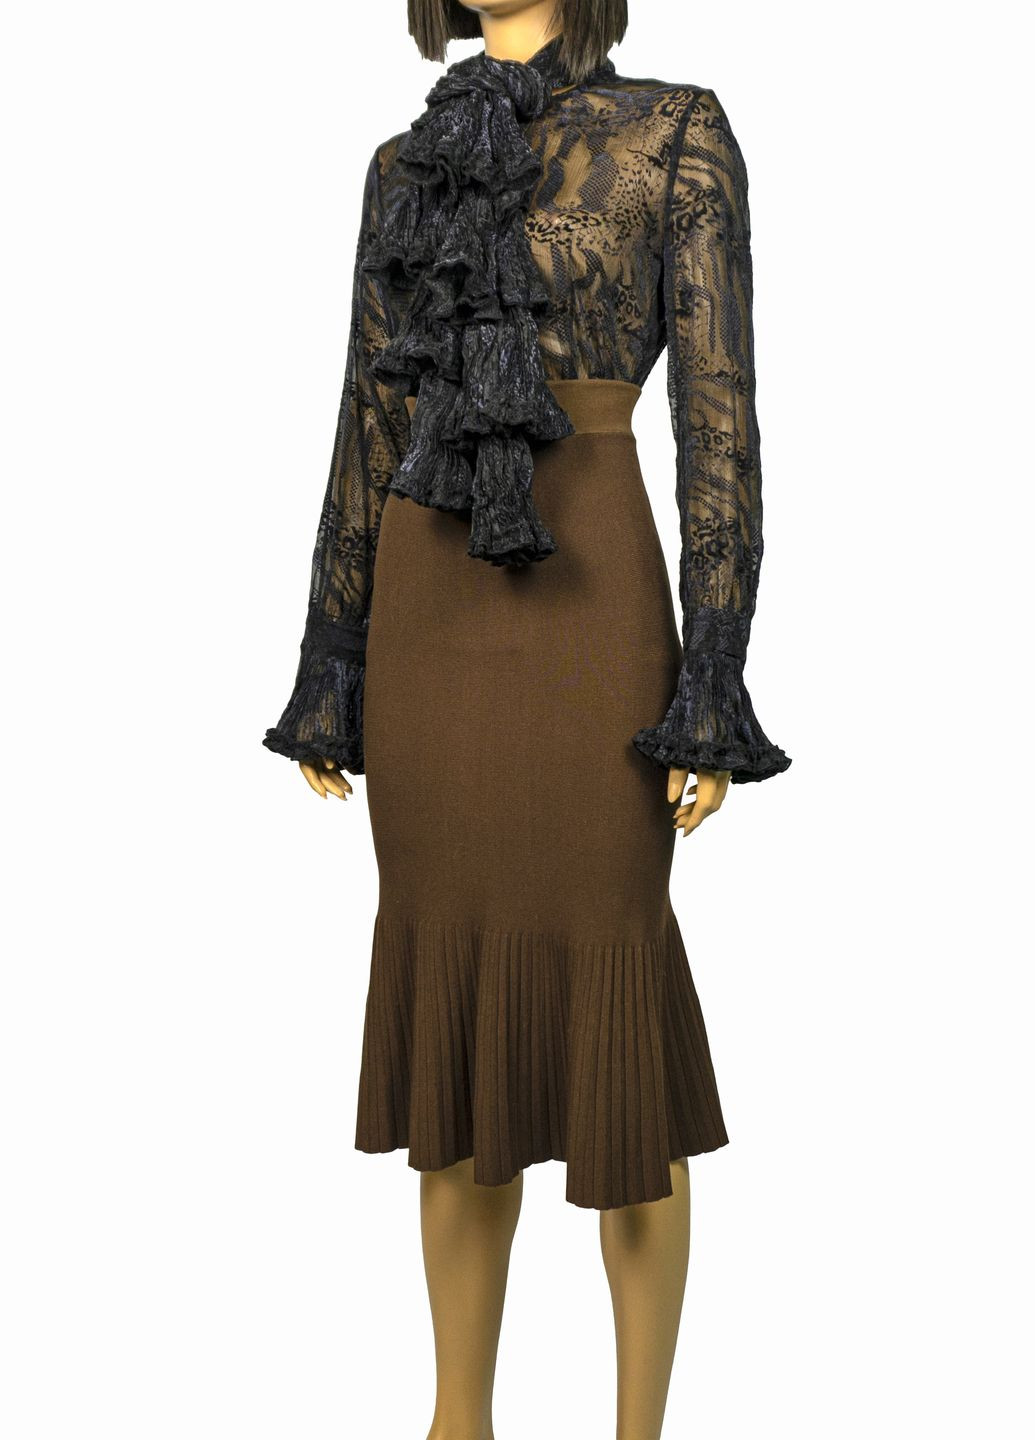 Чёрная женская блуза из органзы с шарфом lw-116679-3 черный Forza Viva